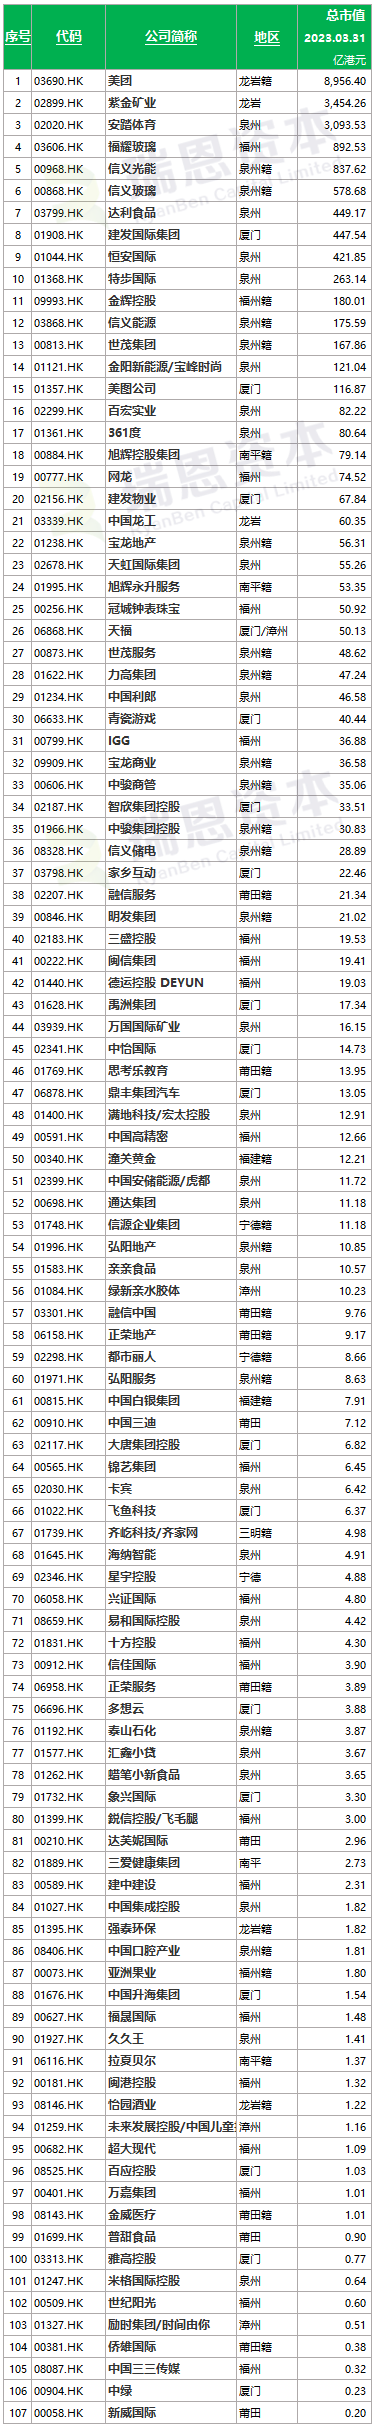 在香港上市的「福建系」企业汇总 (截至2023年3月31日)